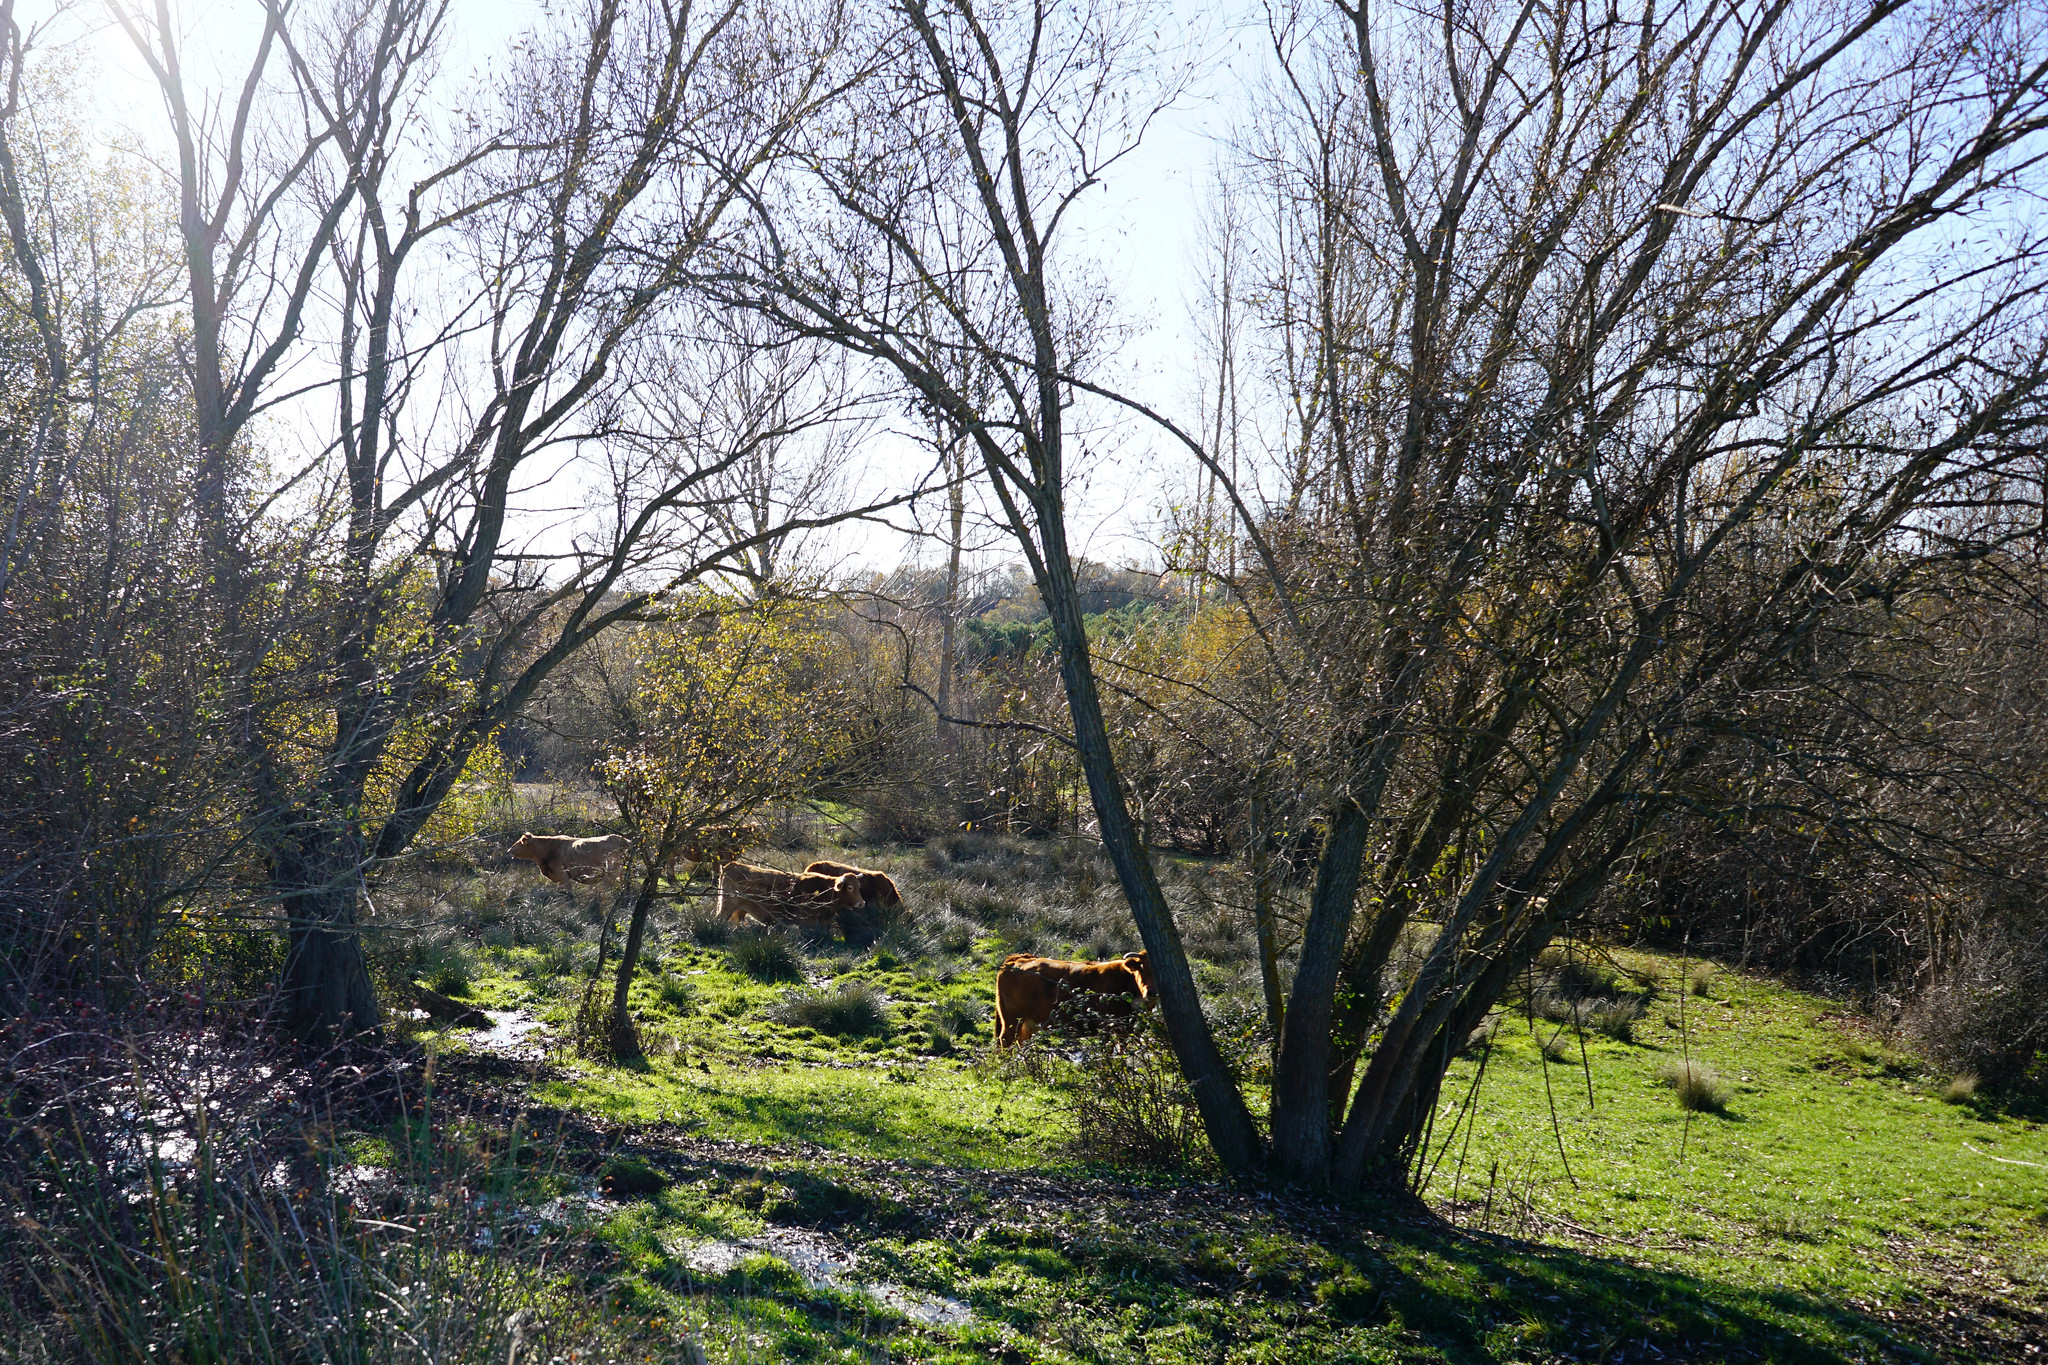 Paisaje de la comarca de La Sobarriba (León), dónde se desarrolla el proyecto.